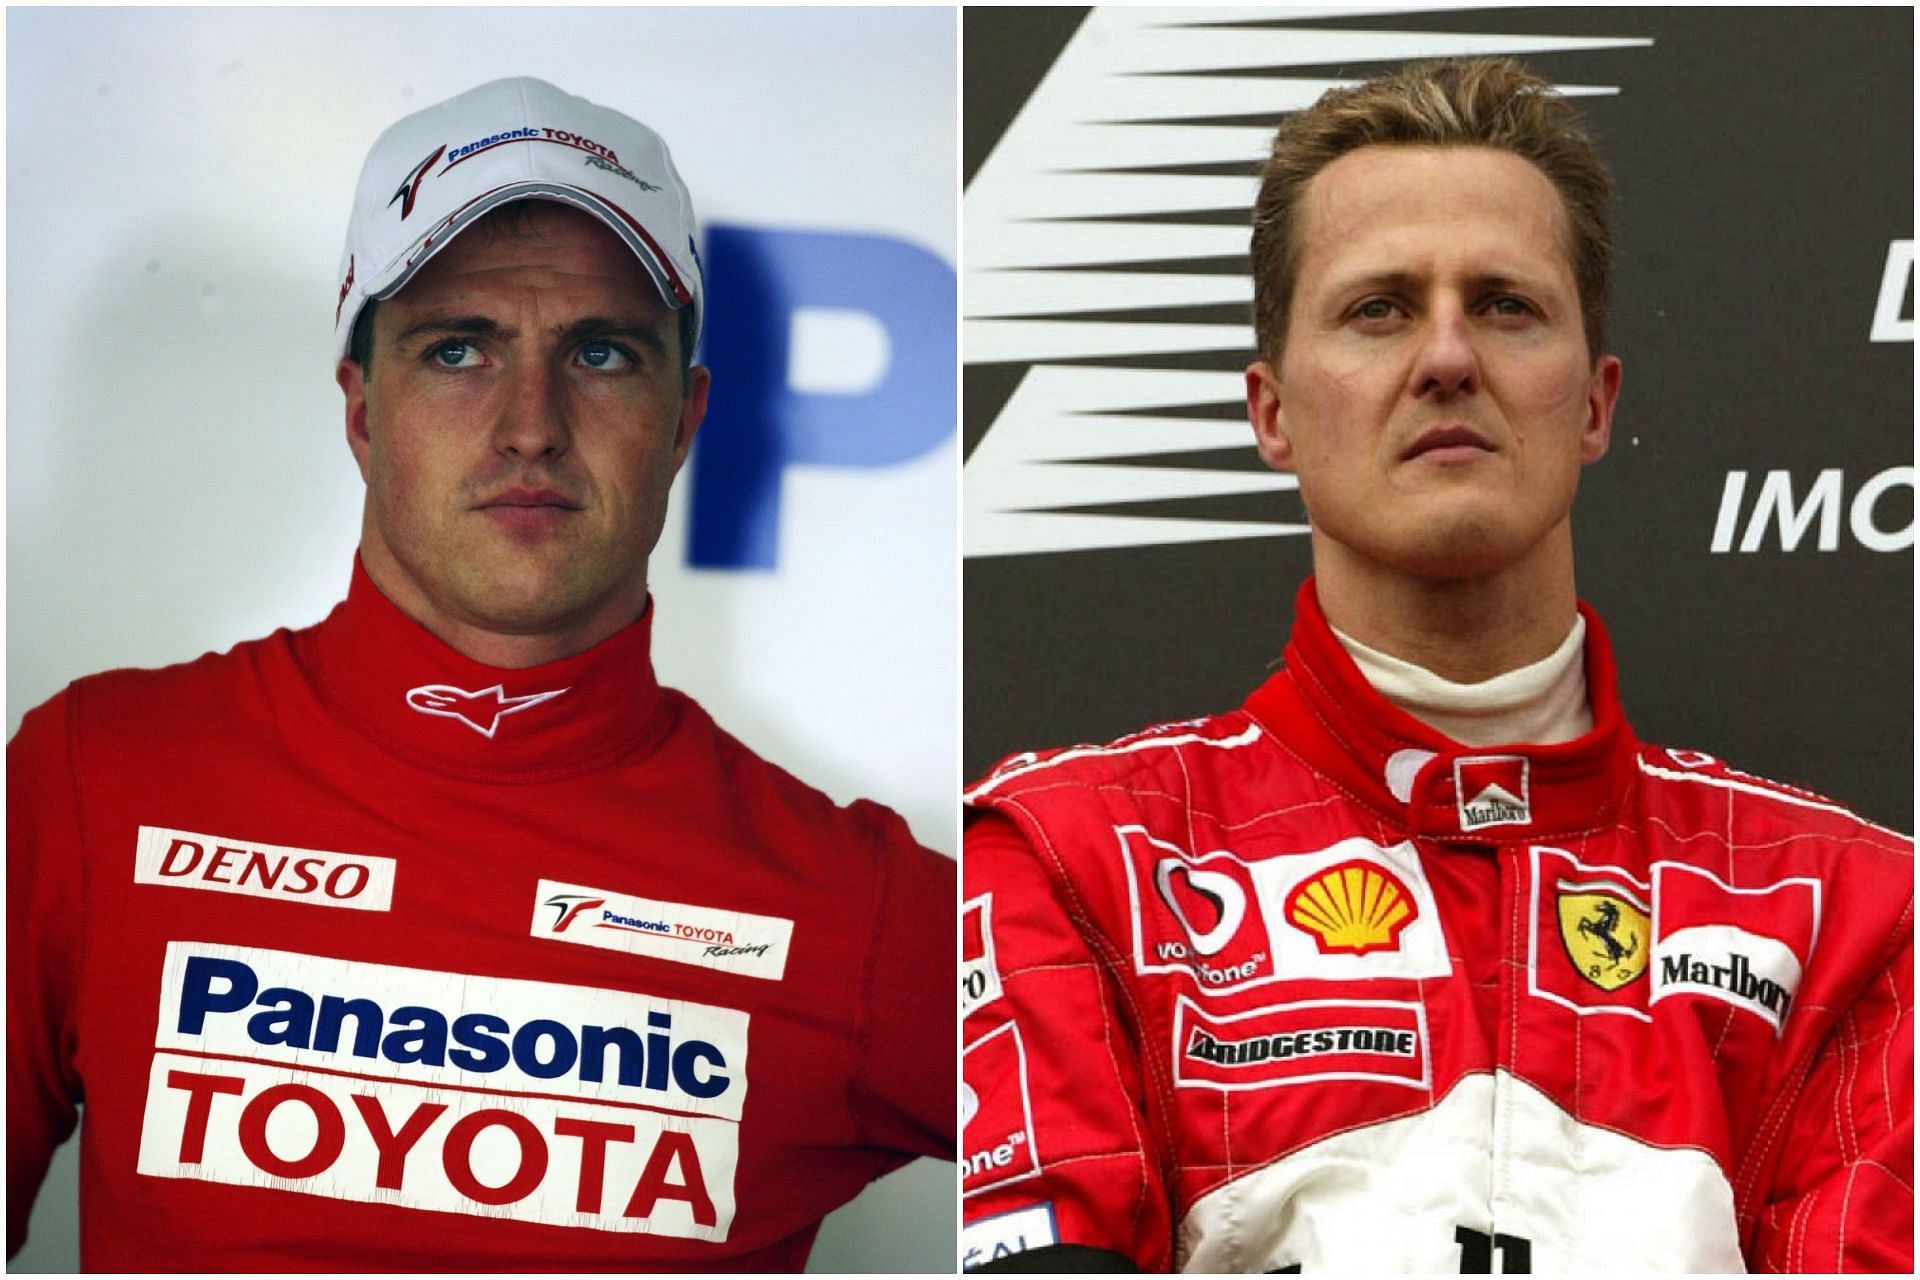 Ralf Schumacher (L), and Michael Schumacher (R) (Collage via Sportskeeda)